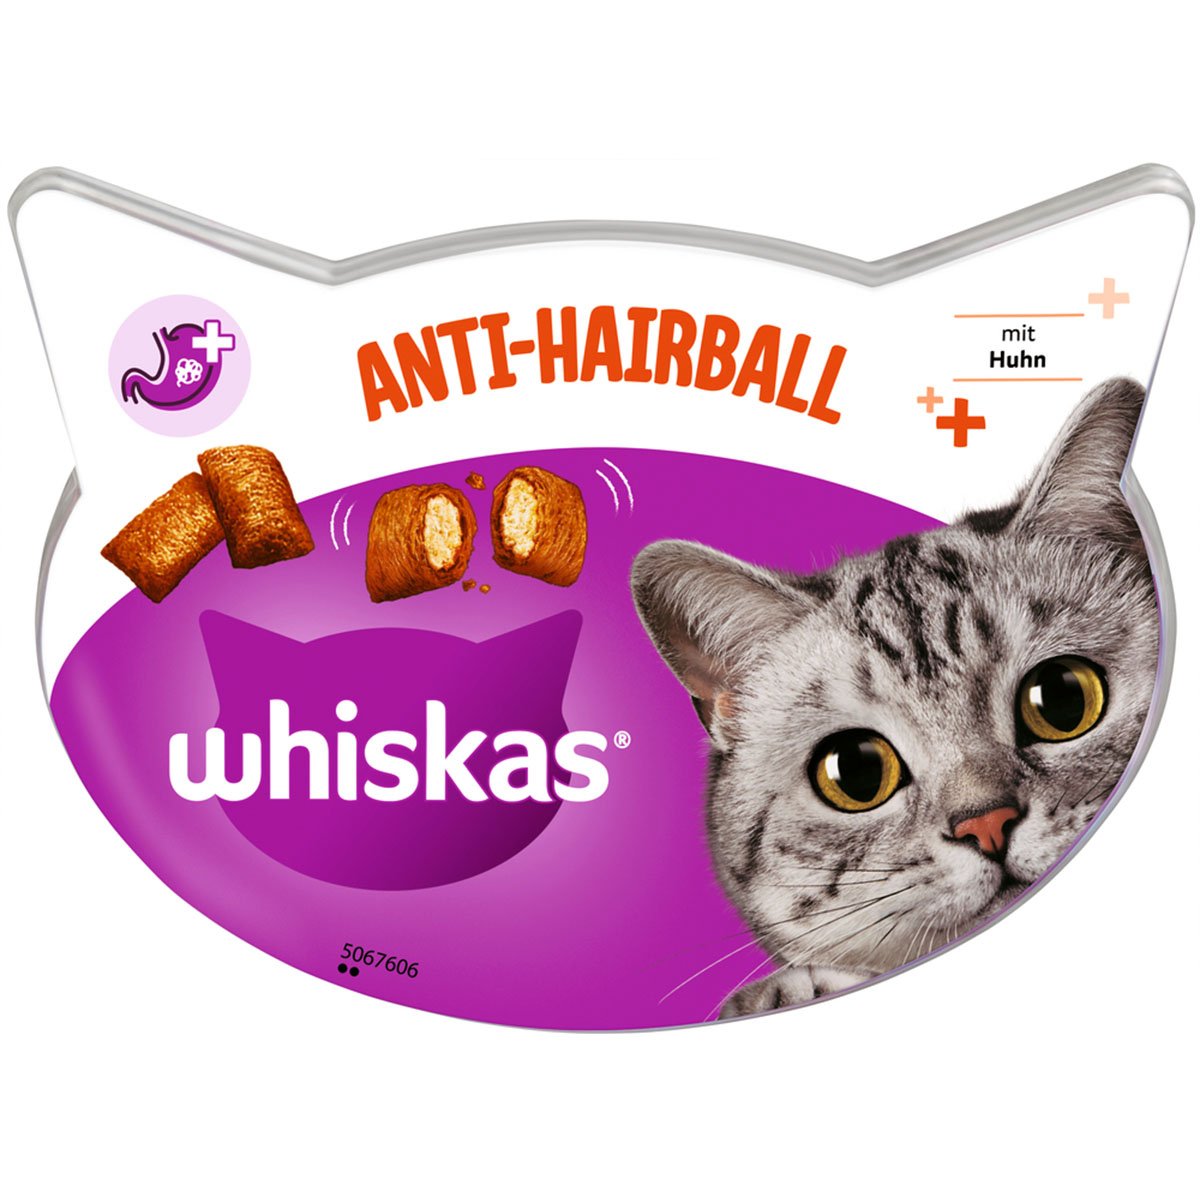 Whiskas Anti-Hairball 8x60g von Whiskas